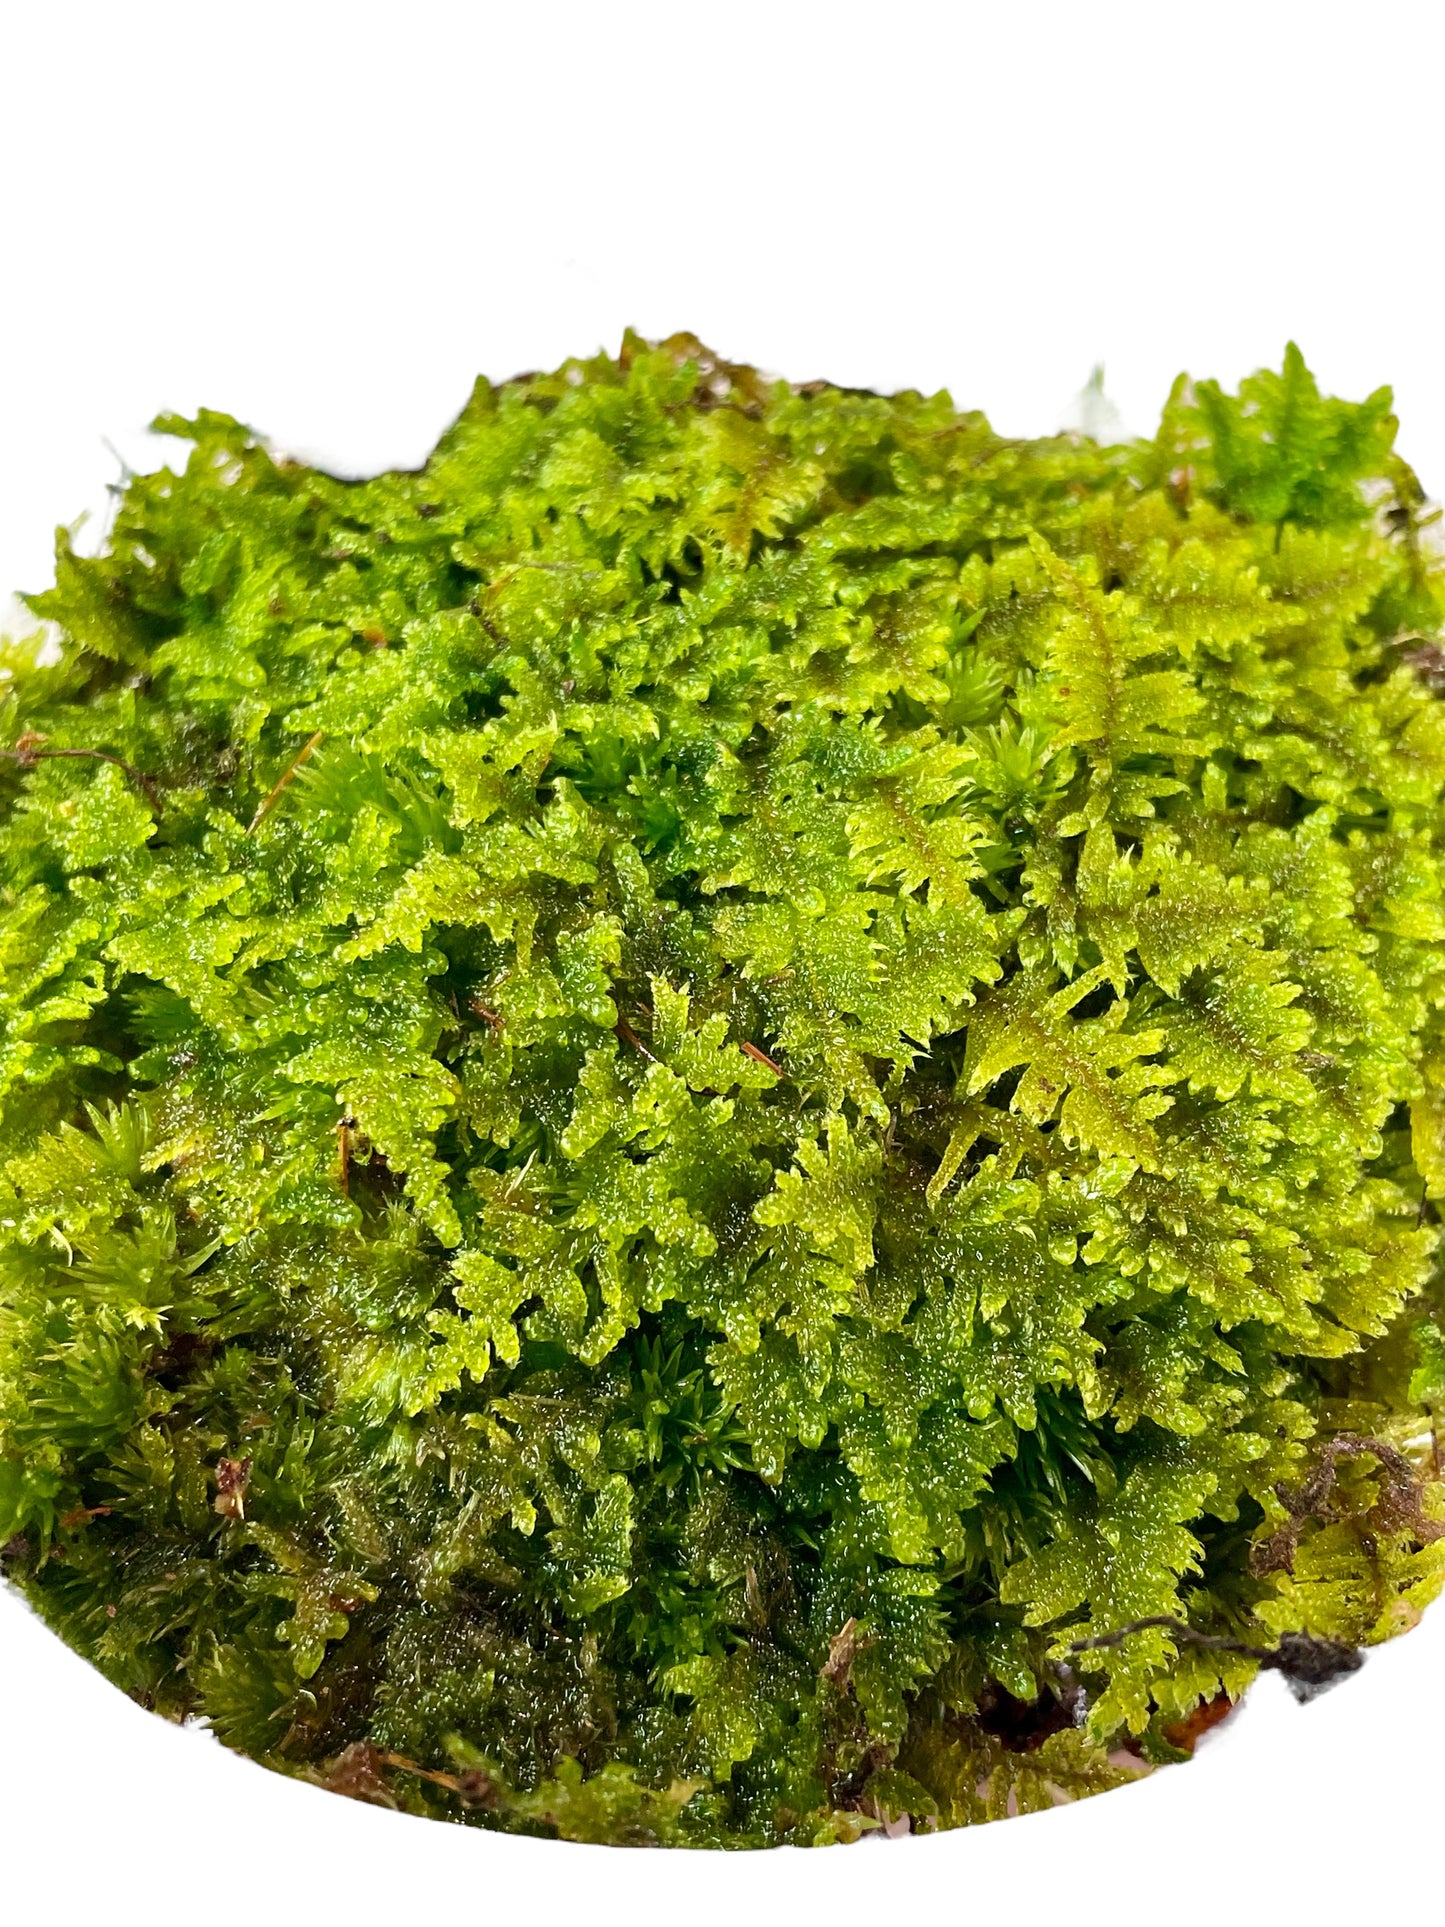 Brocade Moss - Hypnum imponens